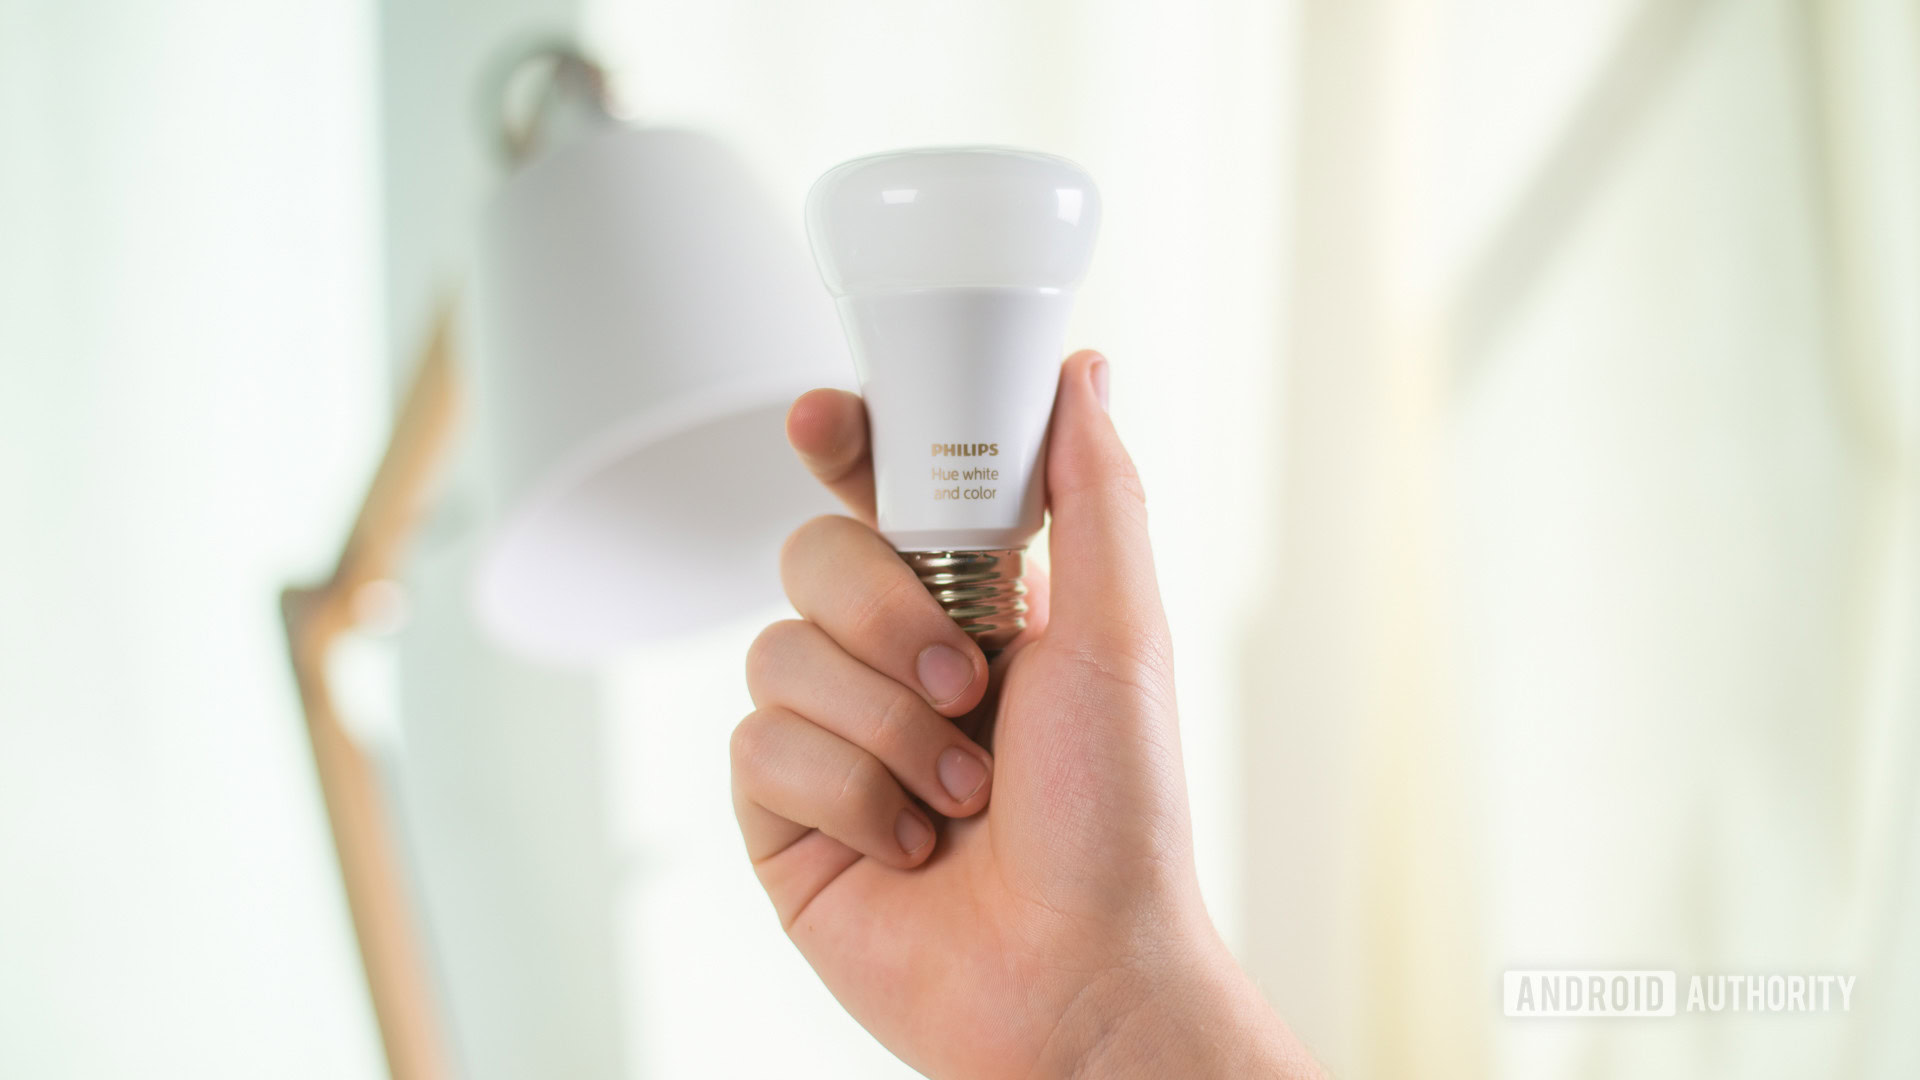 Philips Hue confirma que la solución para el brillo de las bombillas está en camino y ofrece una solución temporal